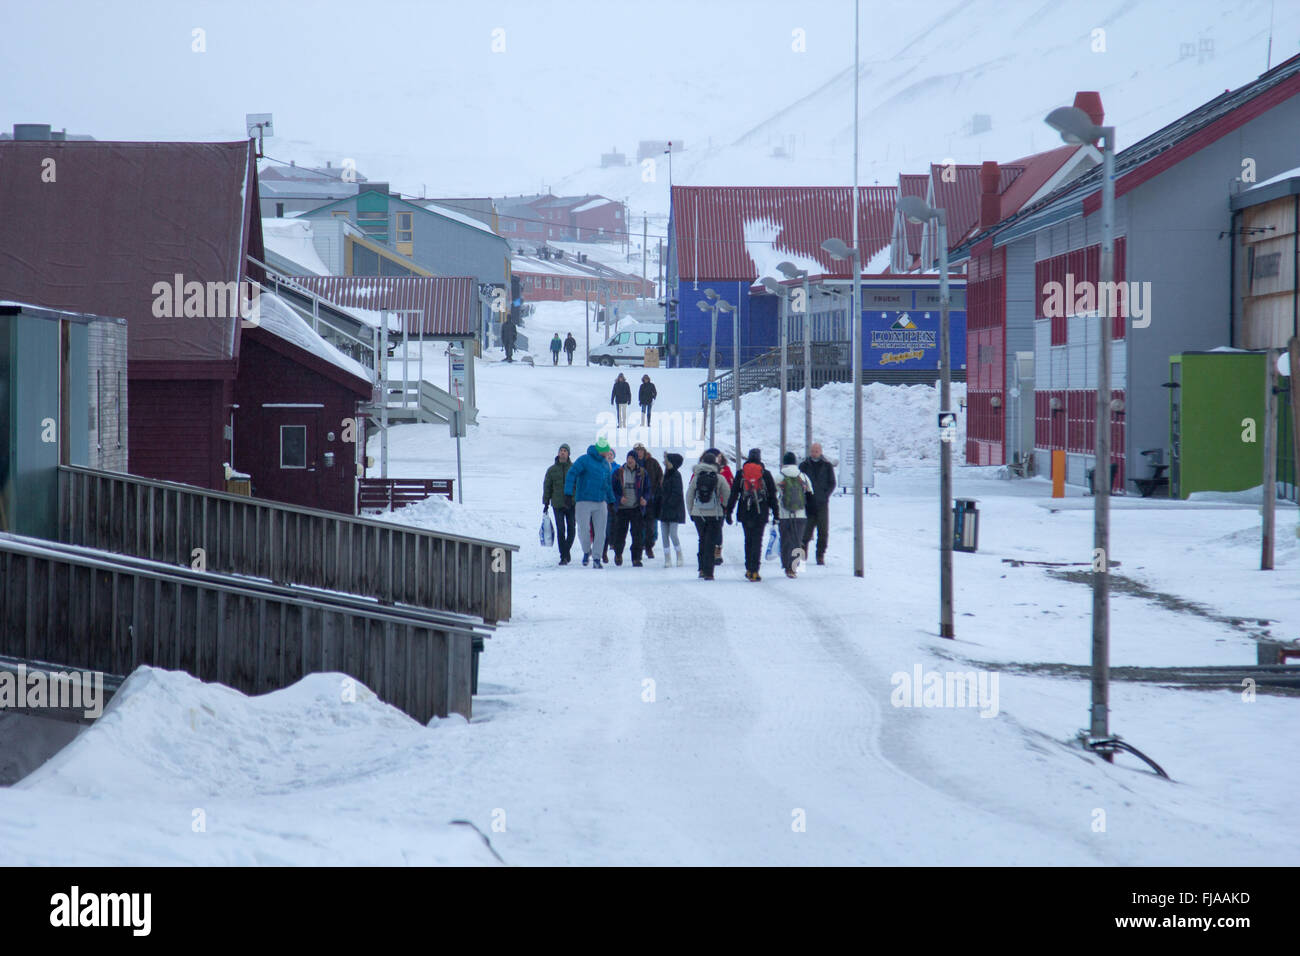 Les gens dans la rue principale de Longyearbyen, au Spitzberg (Svalbard), la Norvège. Mars, encore beaucoup de neige. Banque D'Images